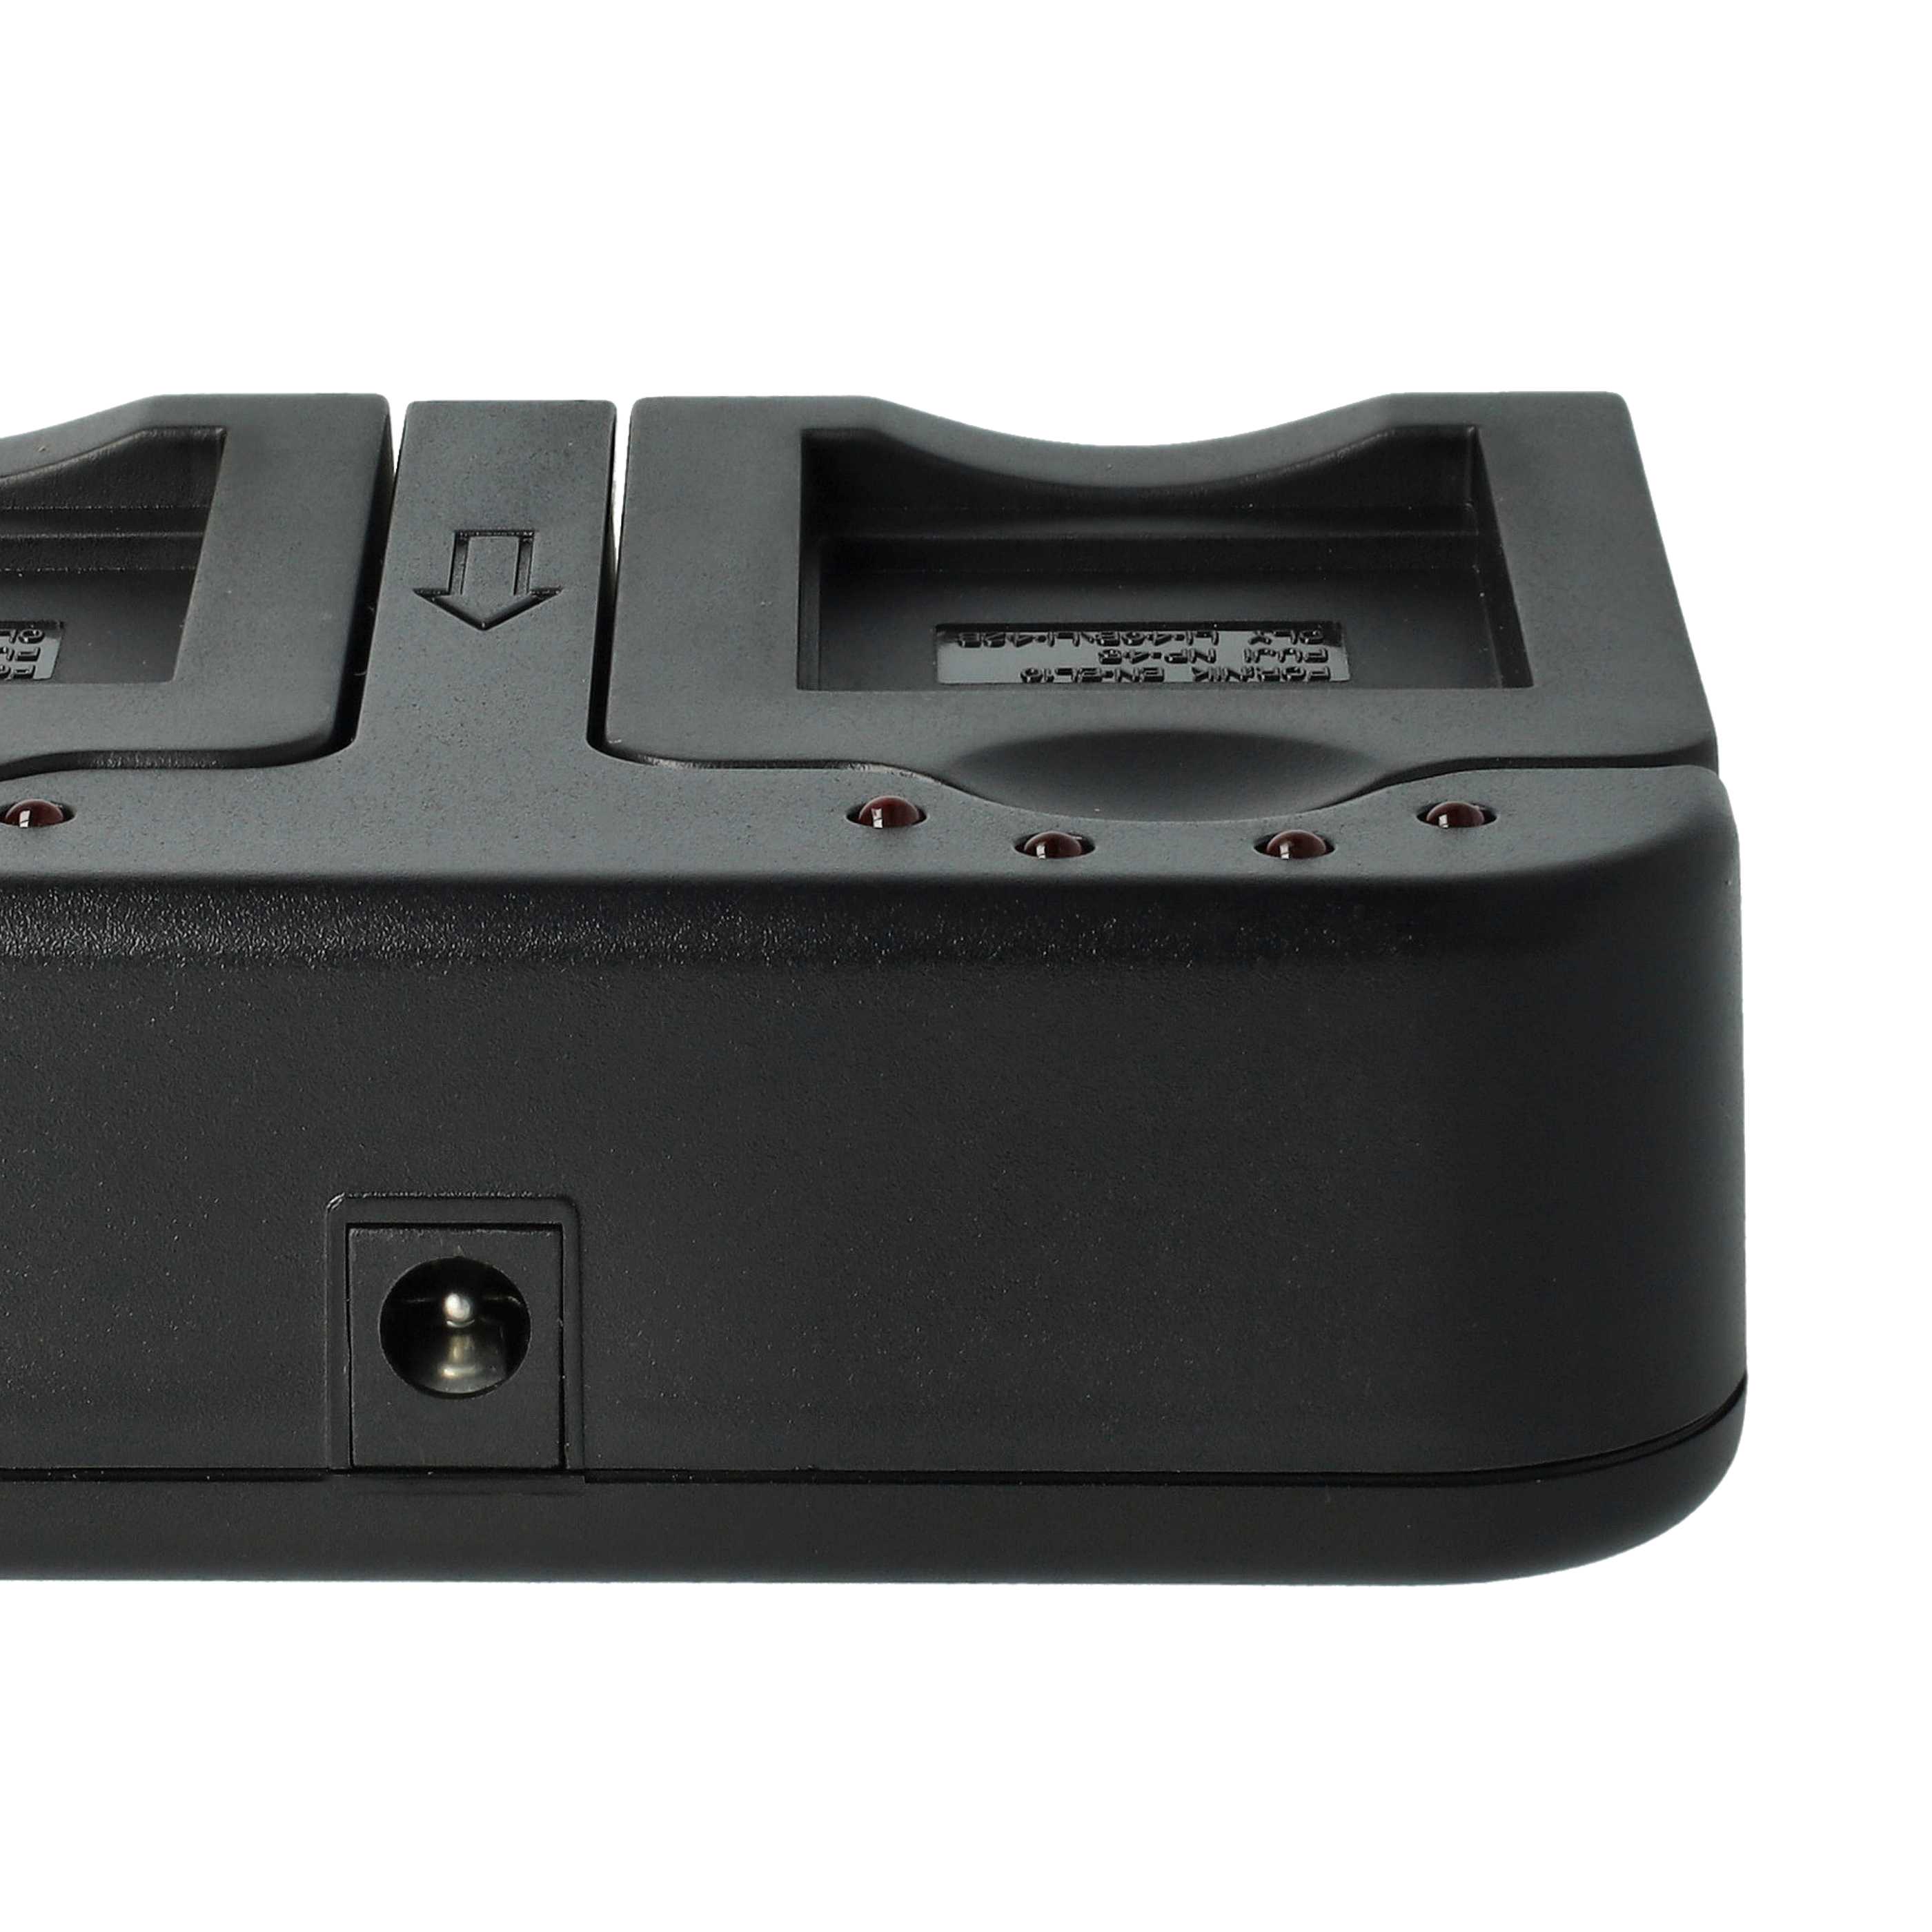 Akku Ladegerät passend für GE Digitalkamera und weitere - 0.5 / 0.9 A, 4.2/8.4 V